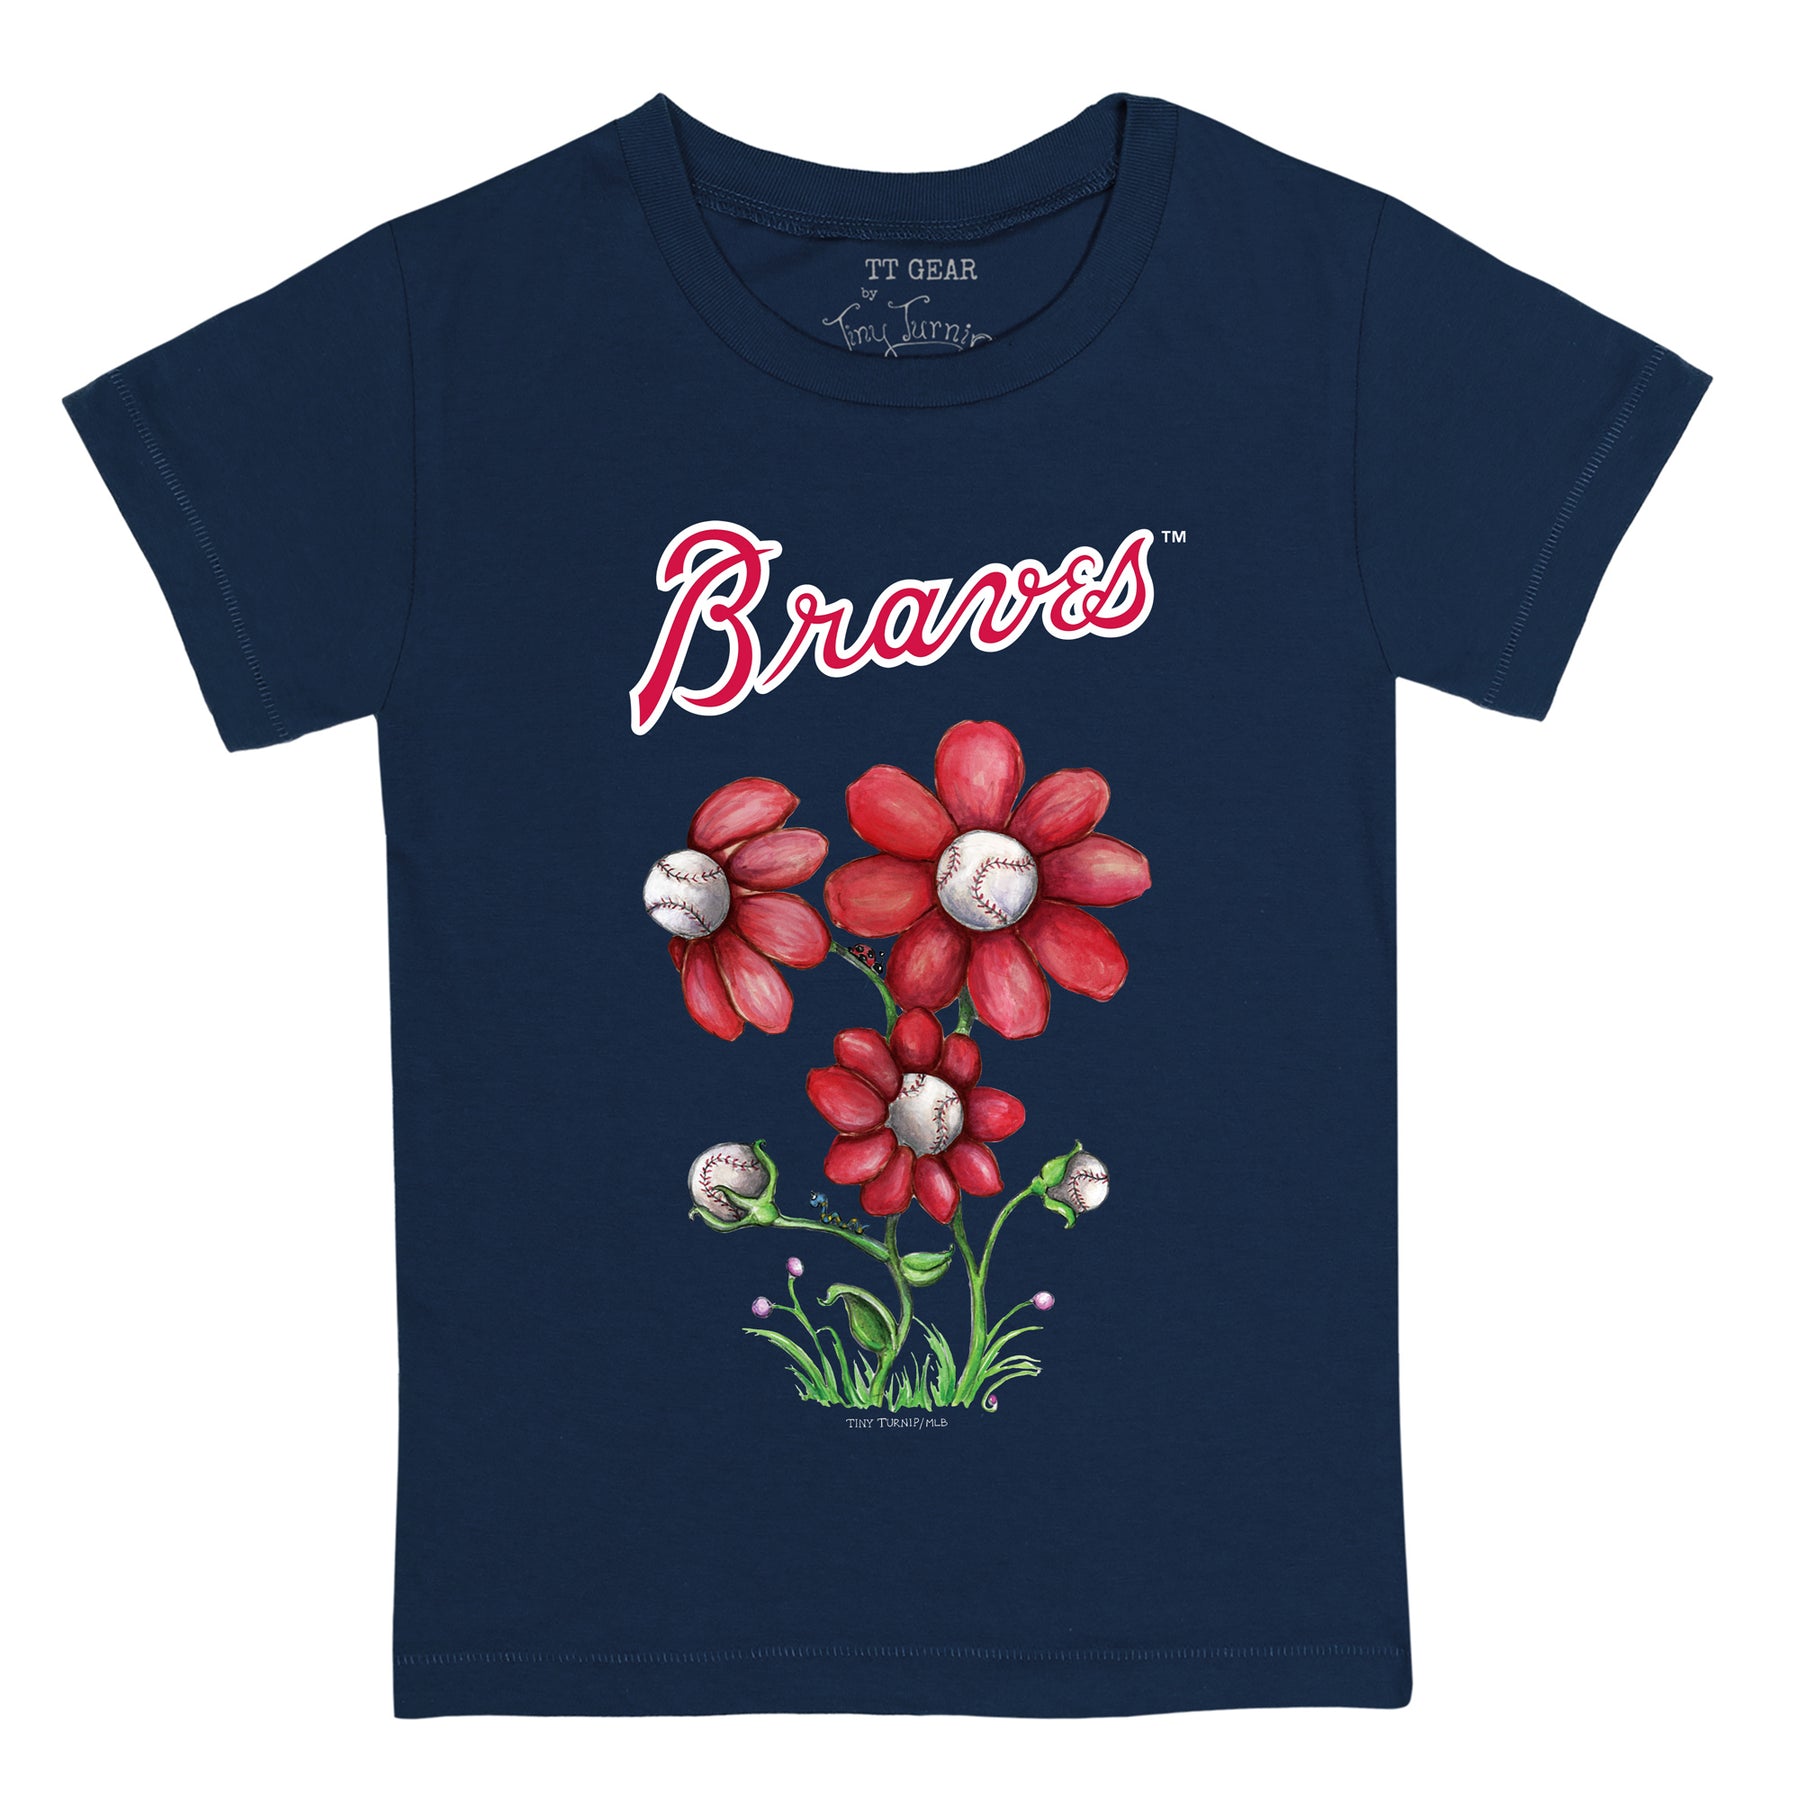 MLB Atlanta Braves Women's Short Sleeve V-Neck T-Shirt - XXL